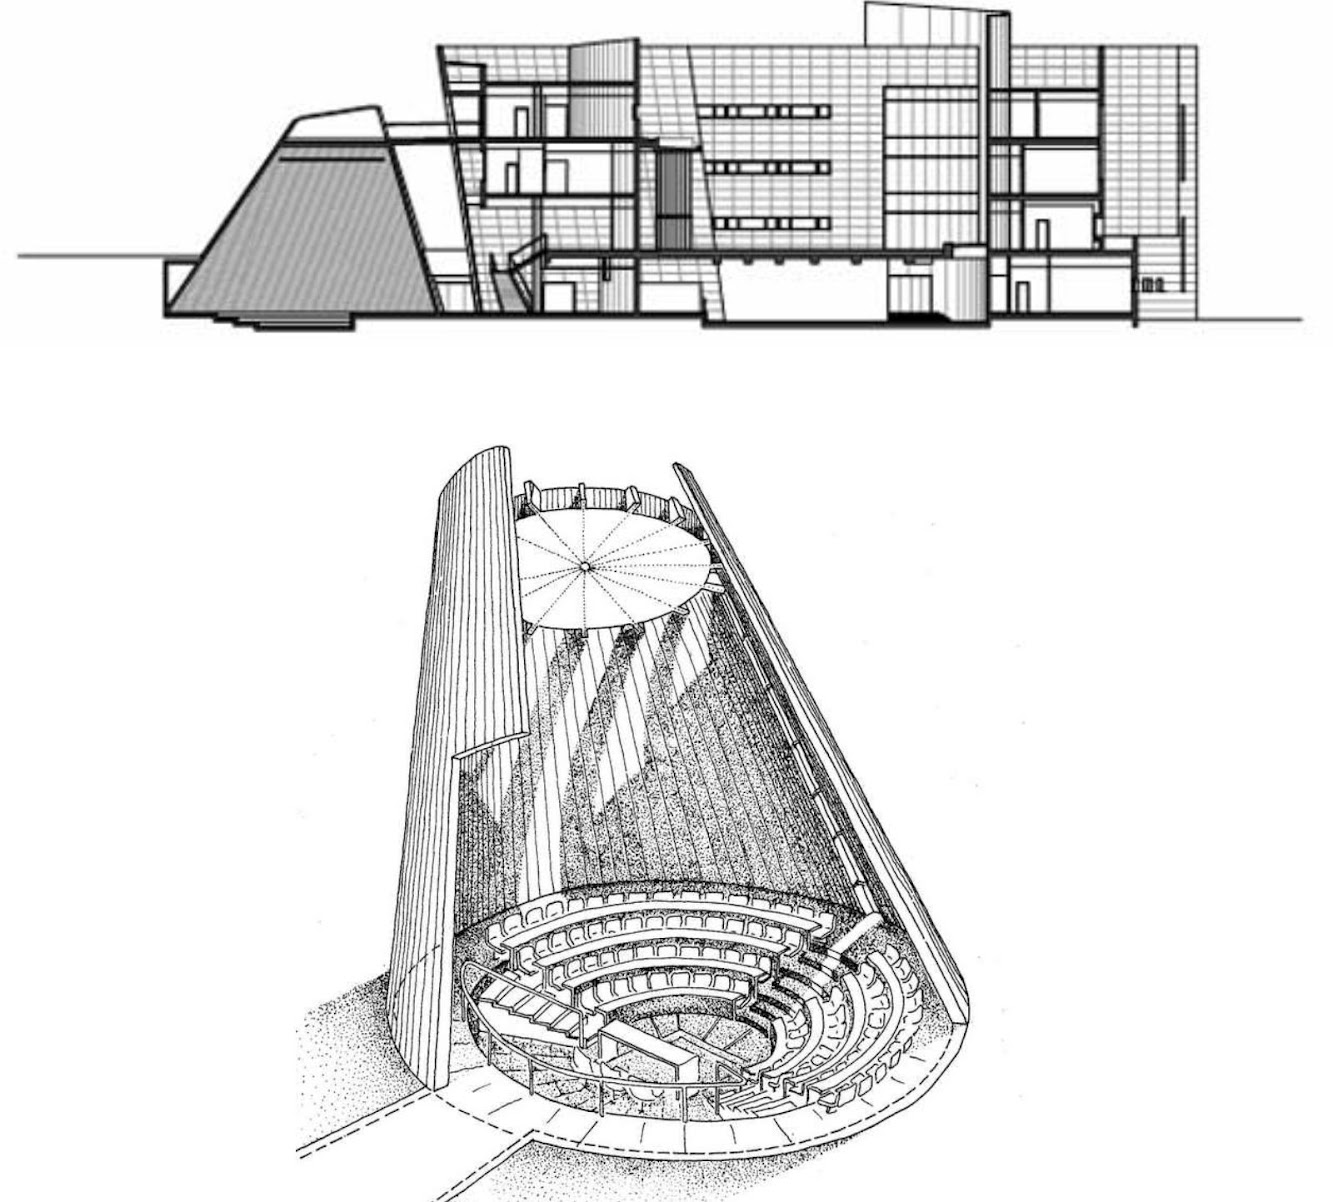 18 Chyutin Architects